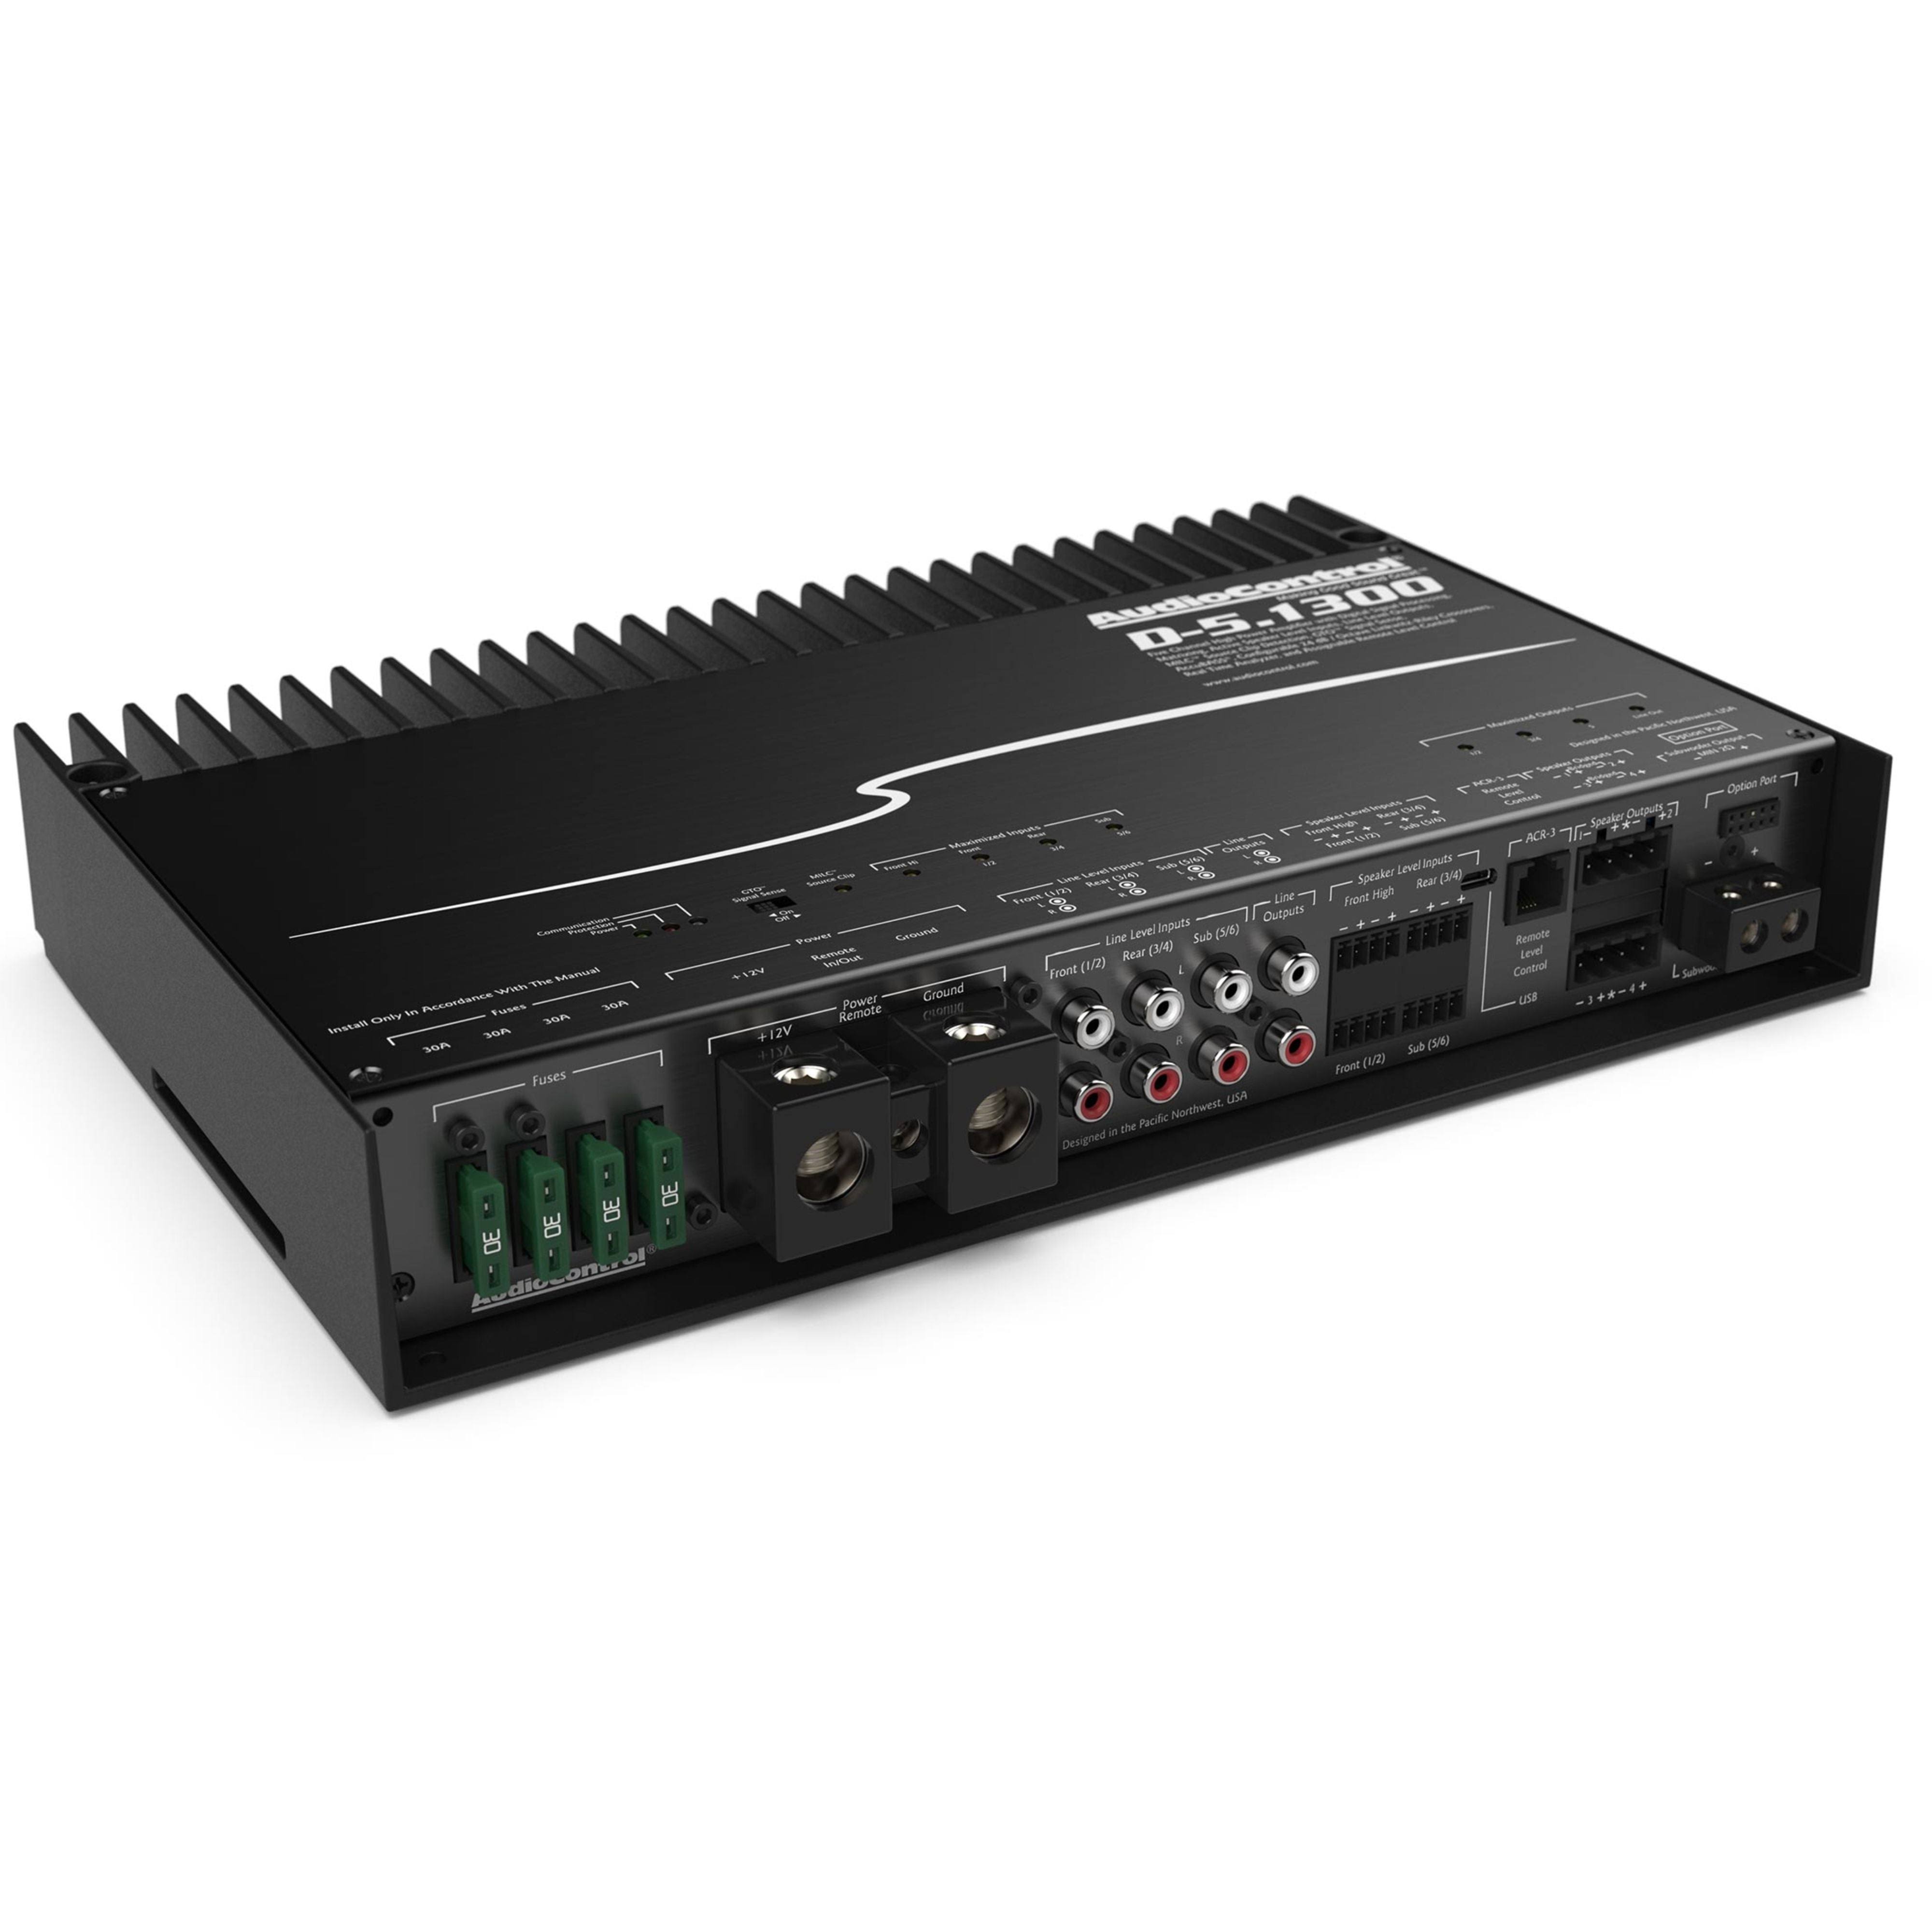 Buy Audiocontrol DM-608 DSP DM-608 - Masori.com